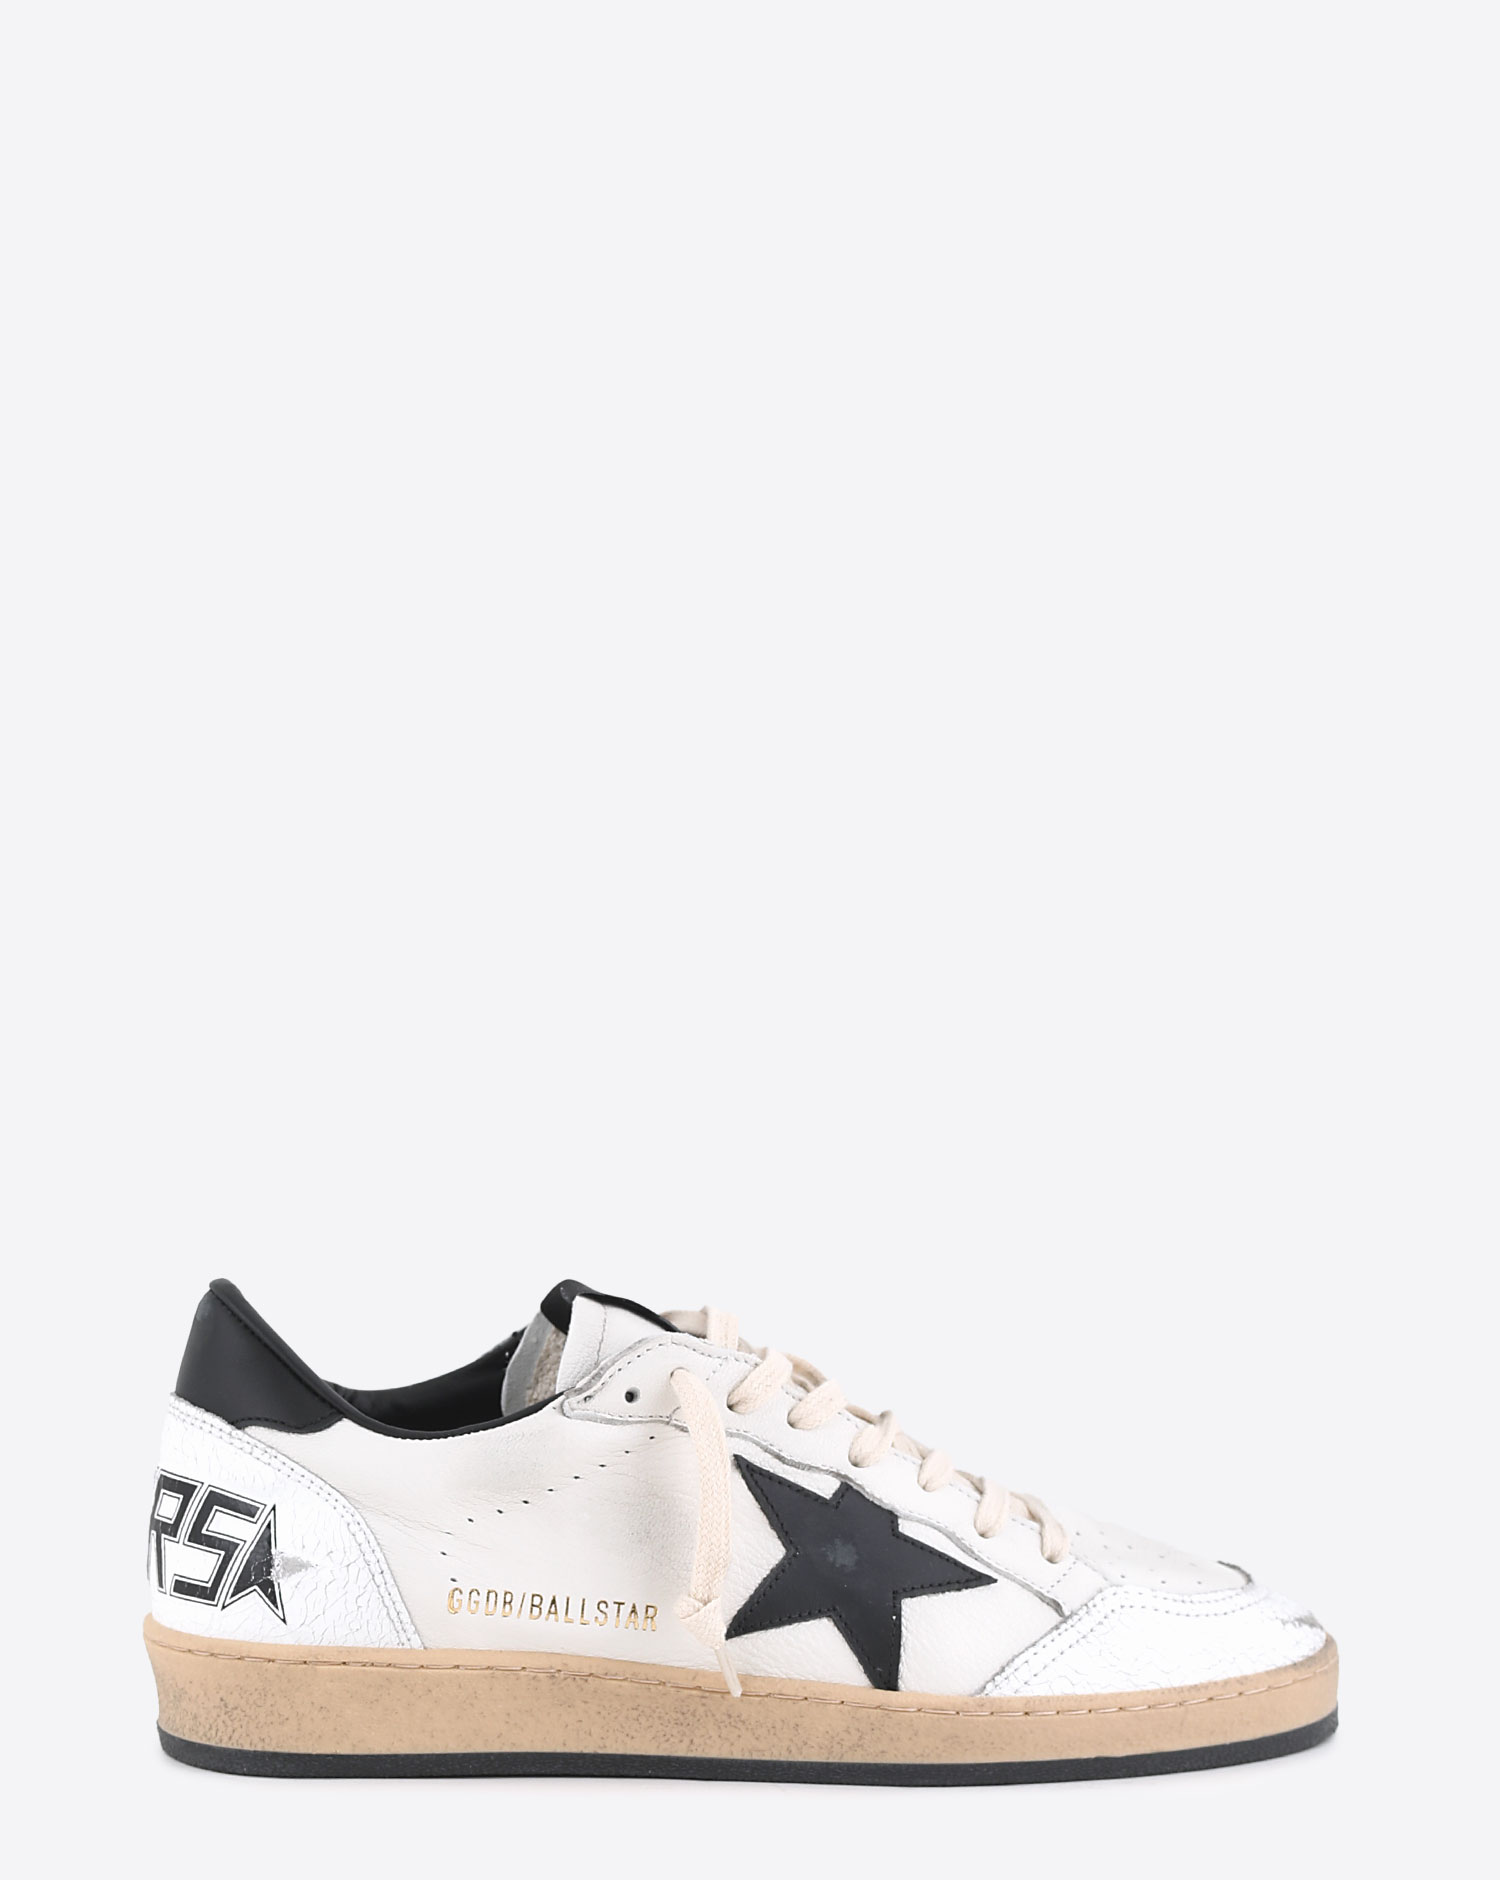 Sneakers Ball Star en cuir blanc étoile cuir noir et arrière noir 10283 Golden Goose femme. Profil.